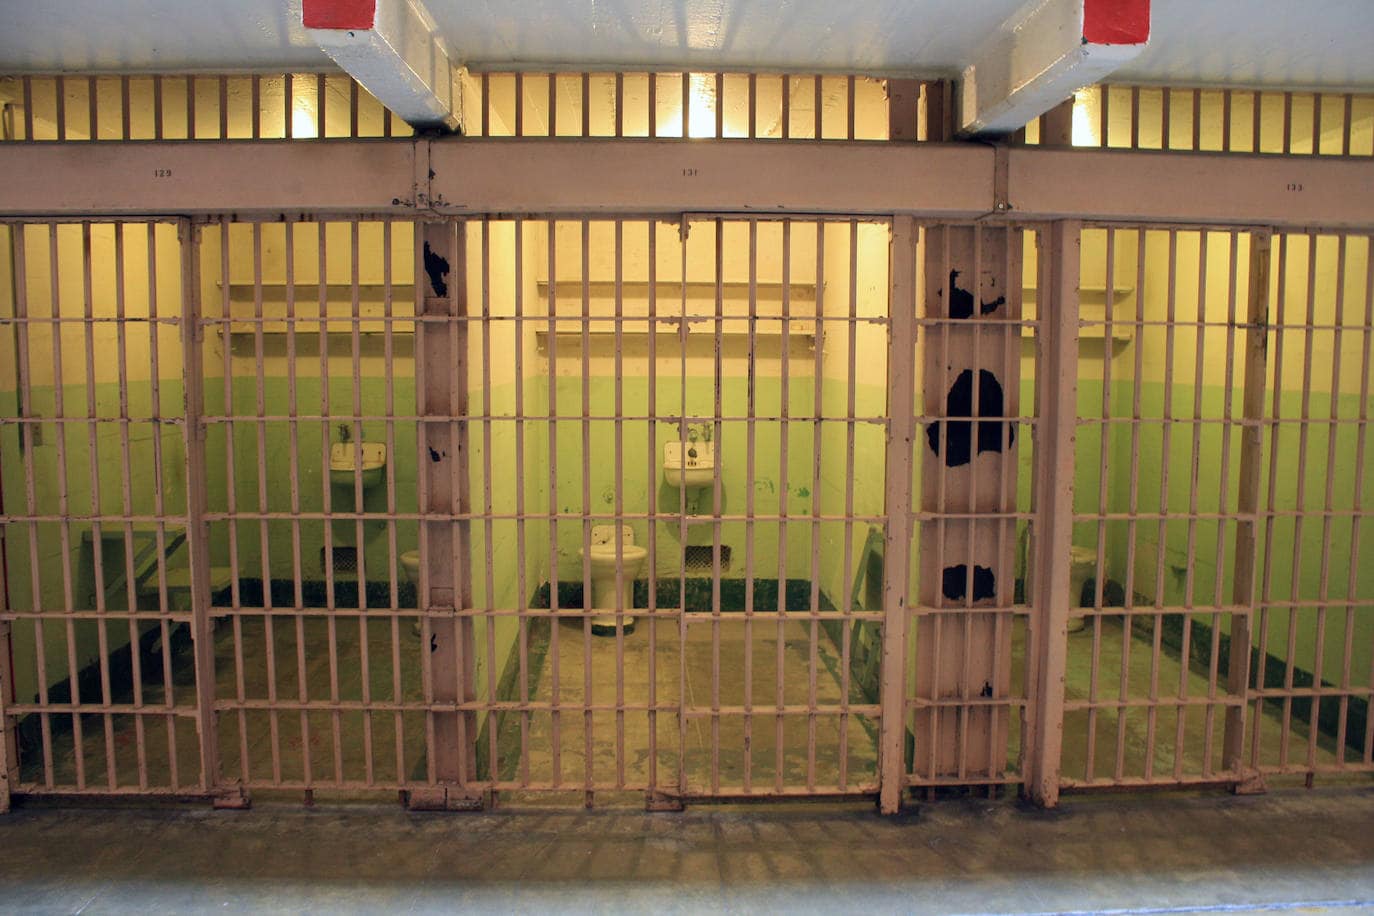 2.- Alcatraz (San Francisco, Estados Unidos) | Alcatraz, isla natural de la bahía de San Francisco es, probablemente, la cárcel más famosa del mundo, aunque solo funcionara como tal durante 29 años (de 1934 a 1963). Alcatraz fue una superprisión, un experimento penitenciario ante el incremento de los crímenes en Estados Unidos tras la Gran Depresión de la década de 1930. En 'La Roca', como también era conocida, estuvieron algunos de los mafiosos más conocidos de la época, como Al Capone o Robert Birdman Stroud.